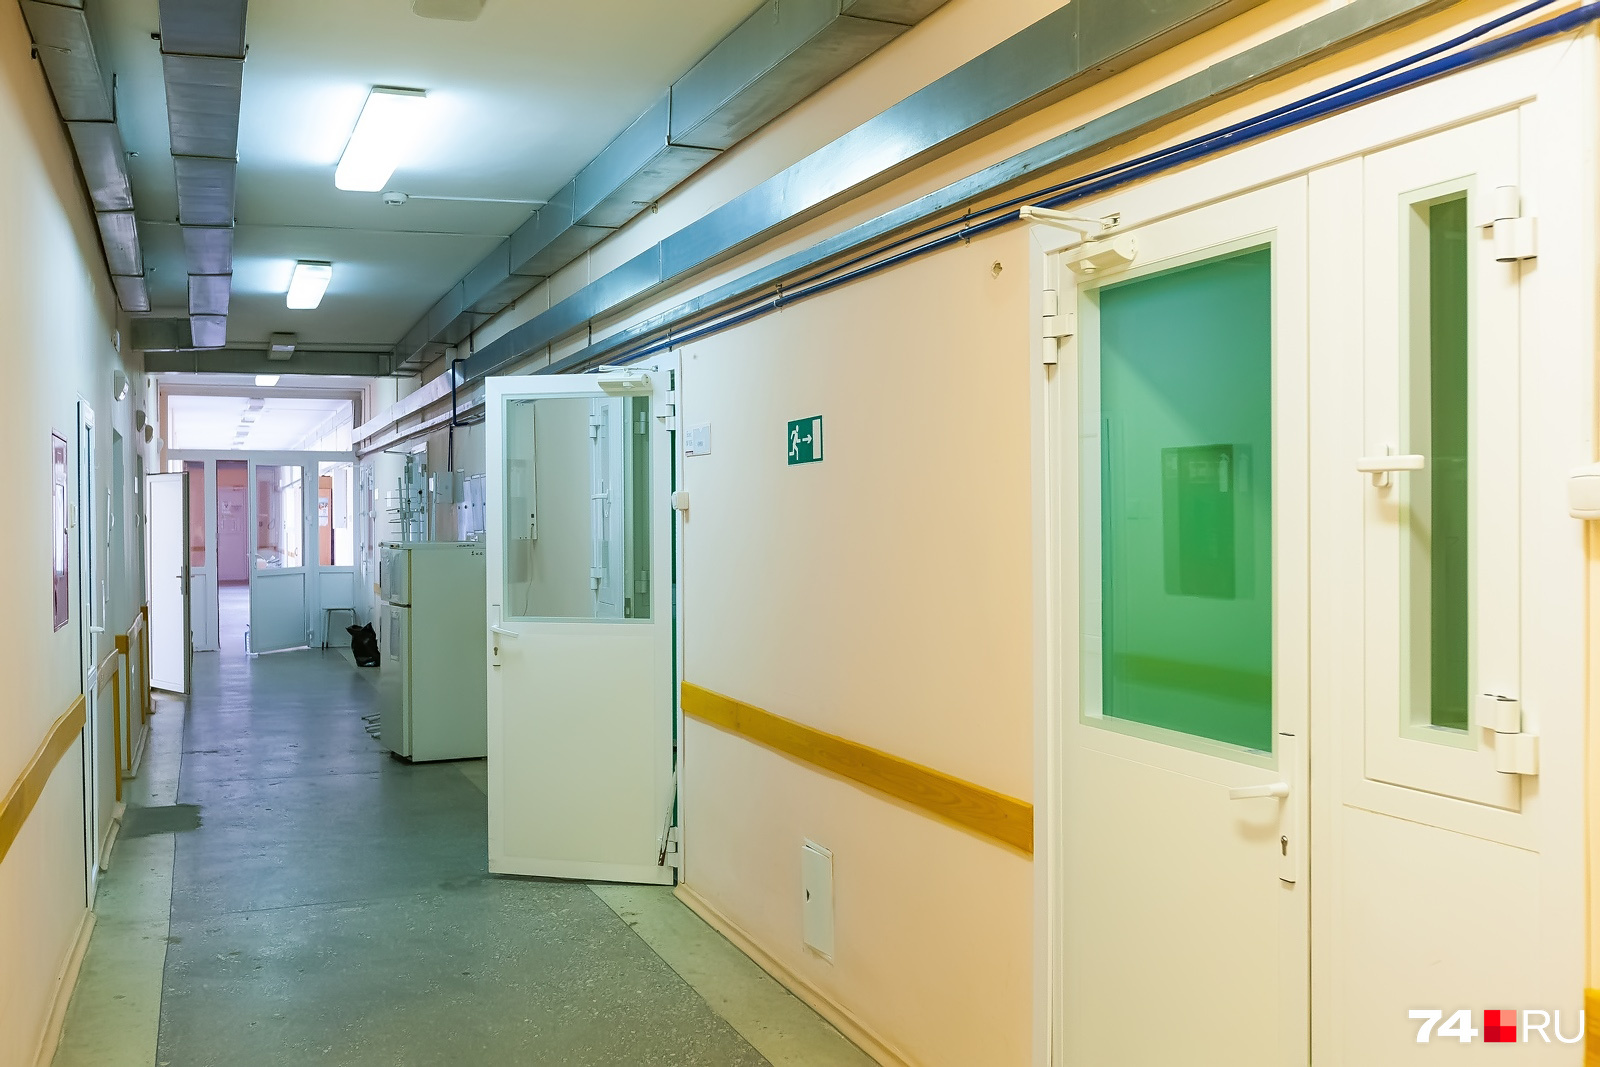 Пациент с подозрением на коронавирус оказался в общей палате в инфекционном отделении горбольницы № 8